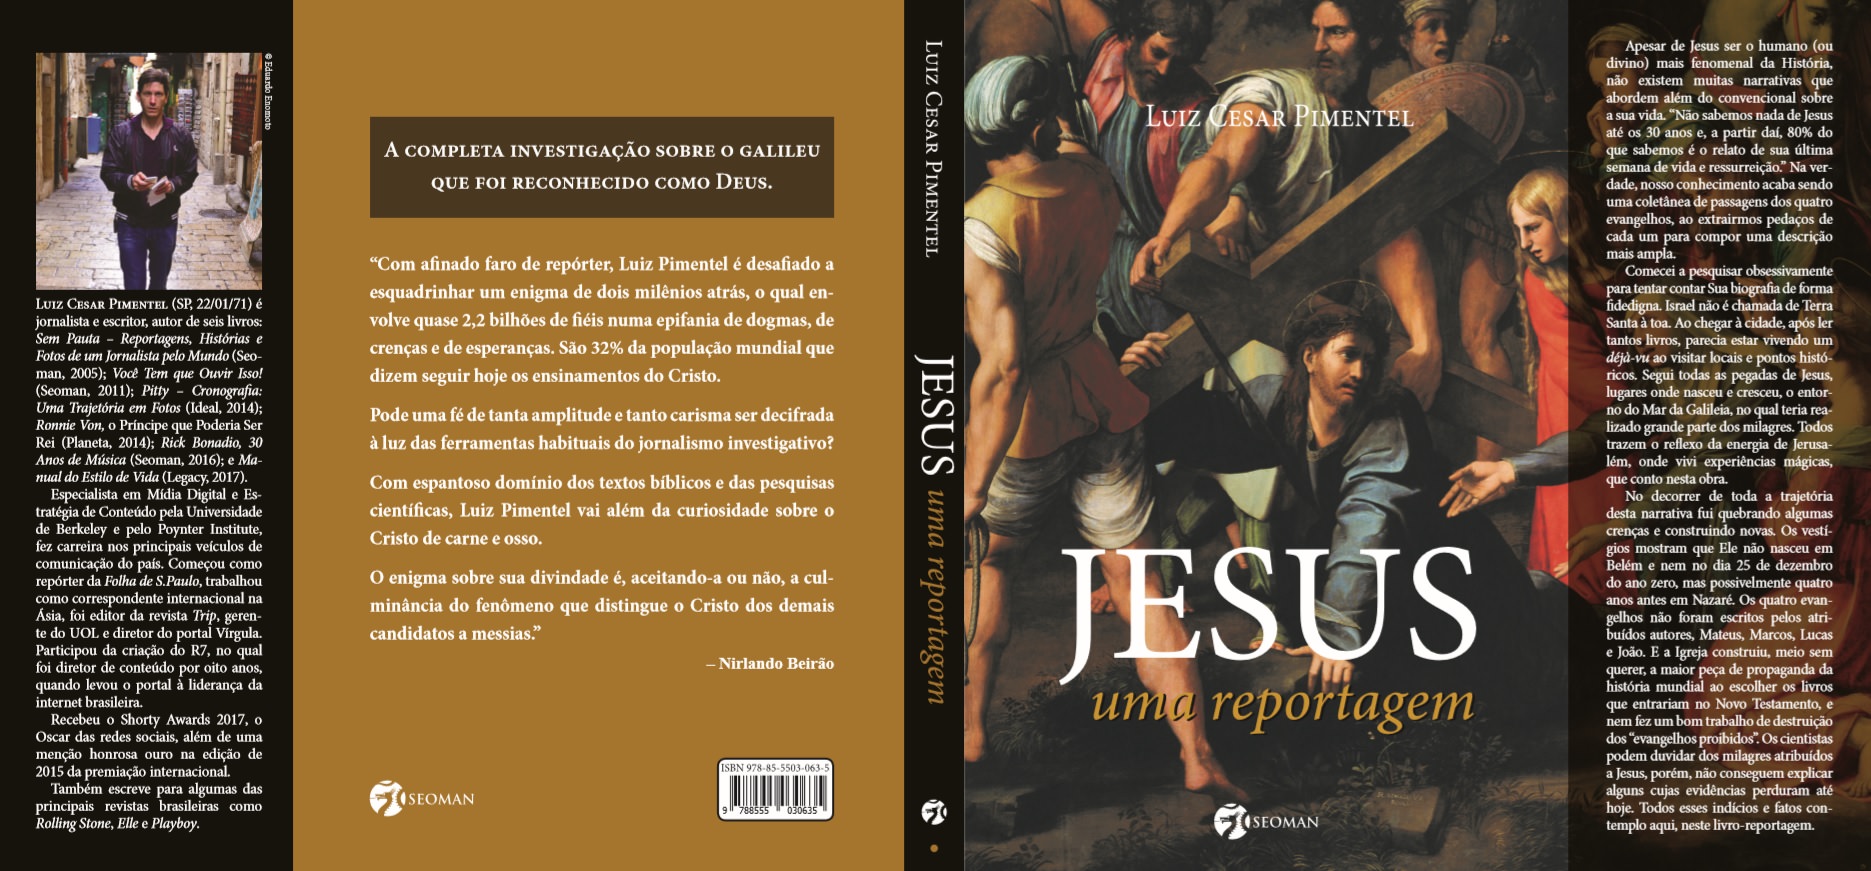 Livre « Jésus, Un reportage « Luiz Cesar Pimentel, couverture. Photos: MF Global Press.